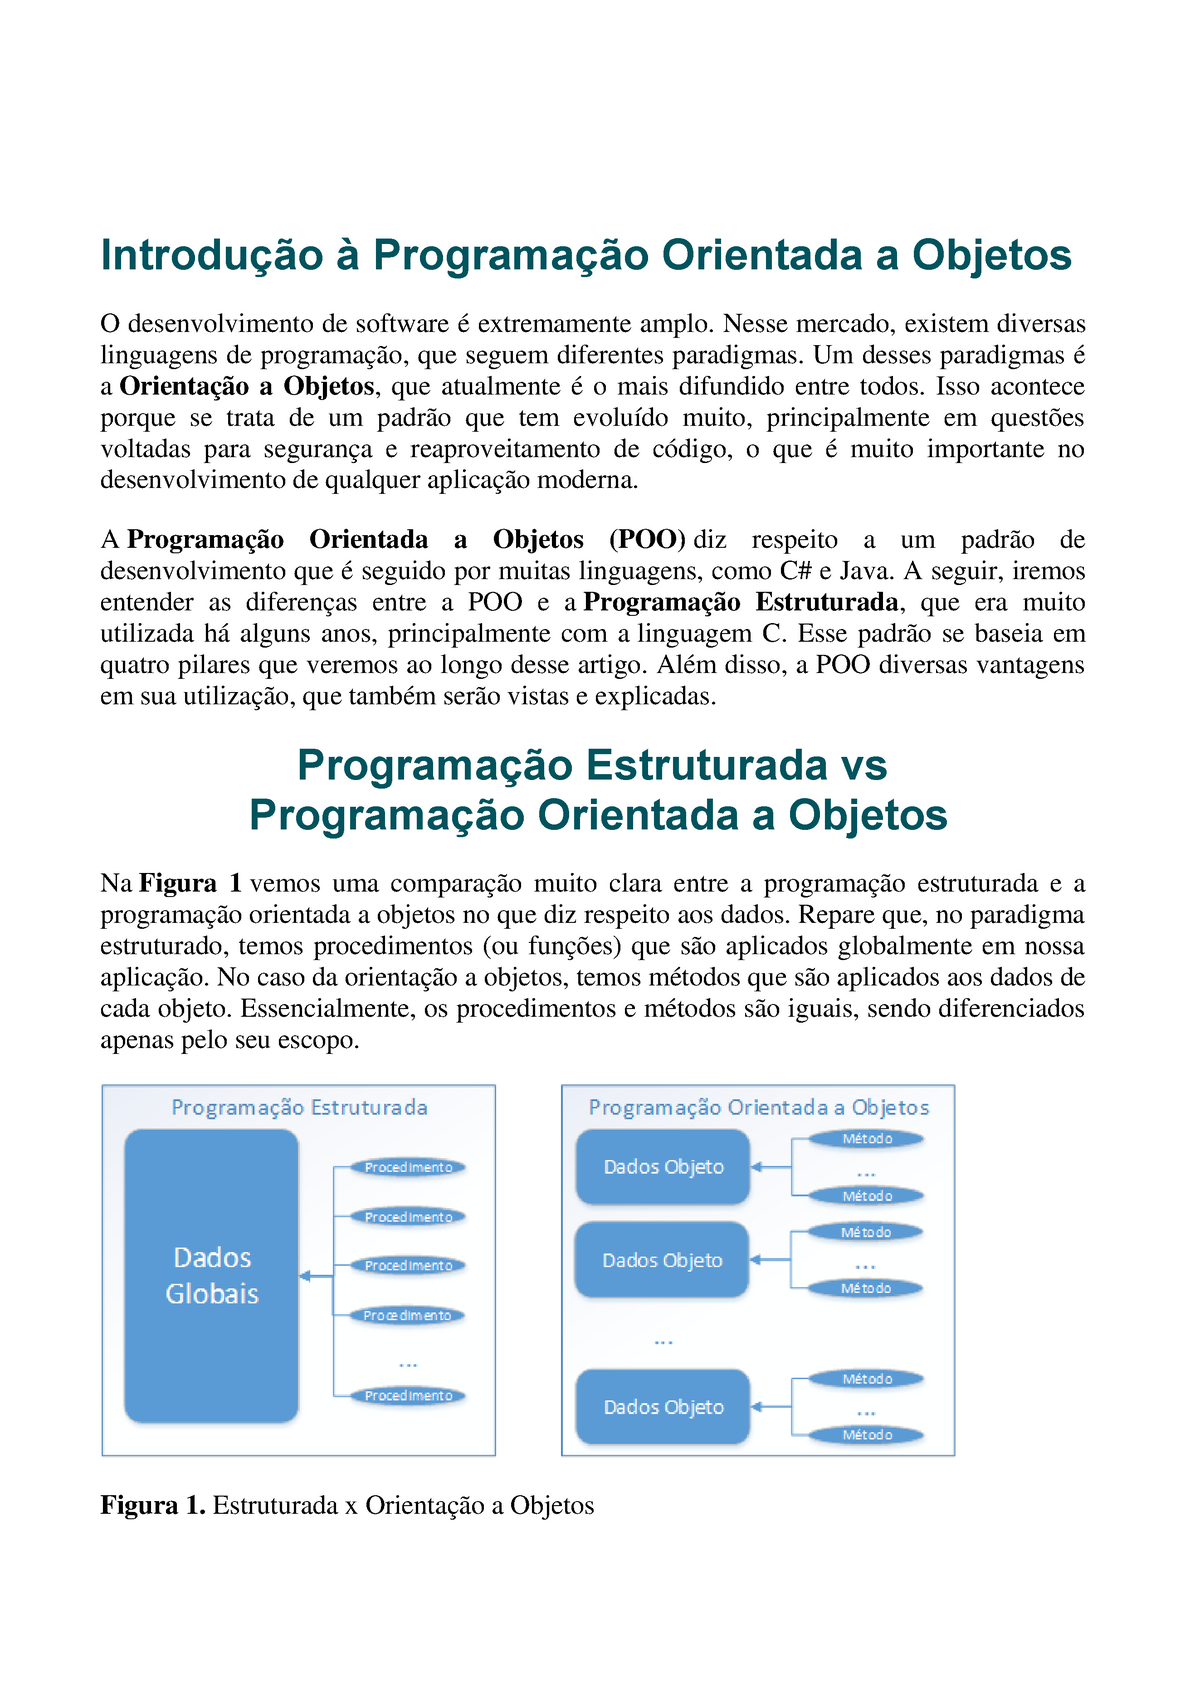 APOL 2 - Programação Orientada a Objetos - Programação Orientada A Objetos